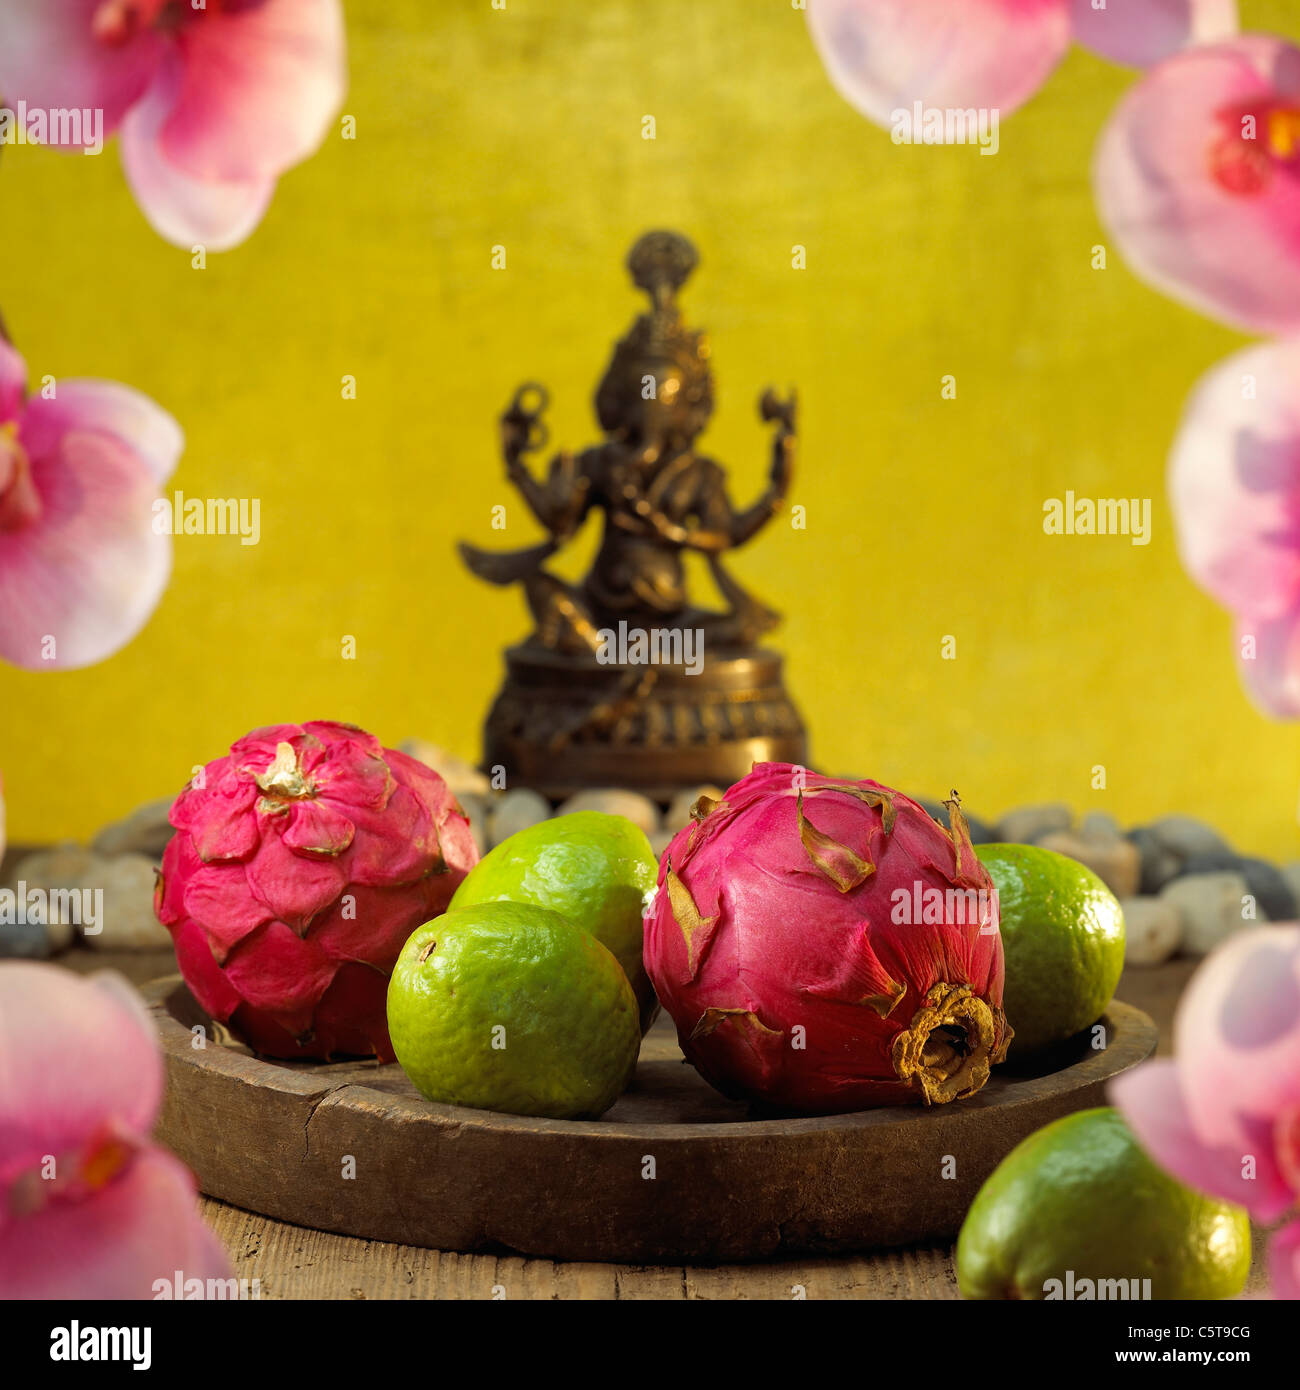 Dragon frutta e frutti guava sul vassoio Foto Stock